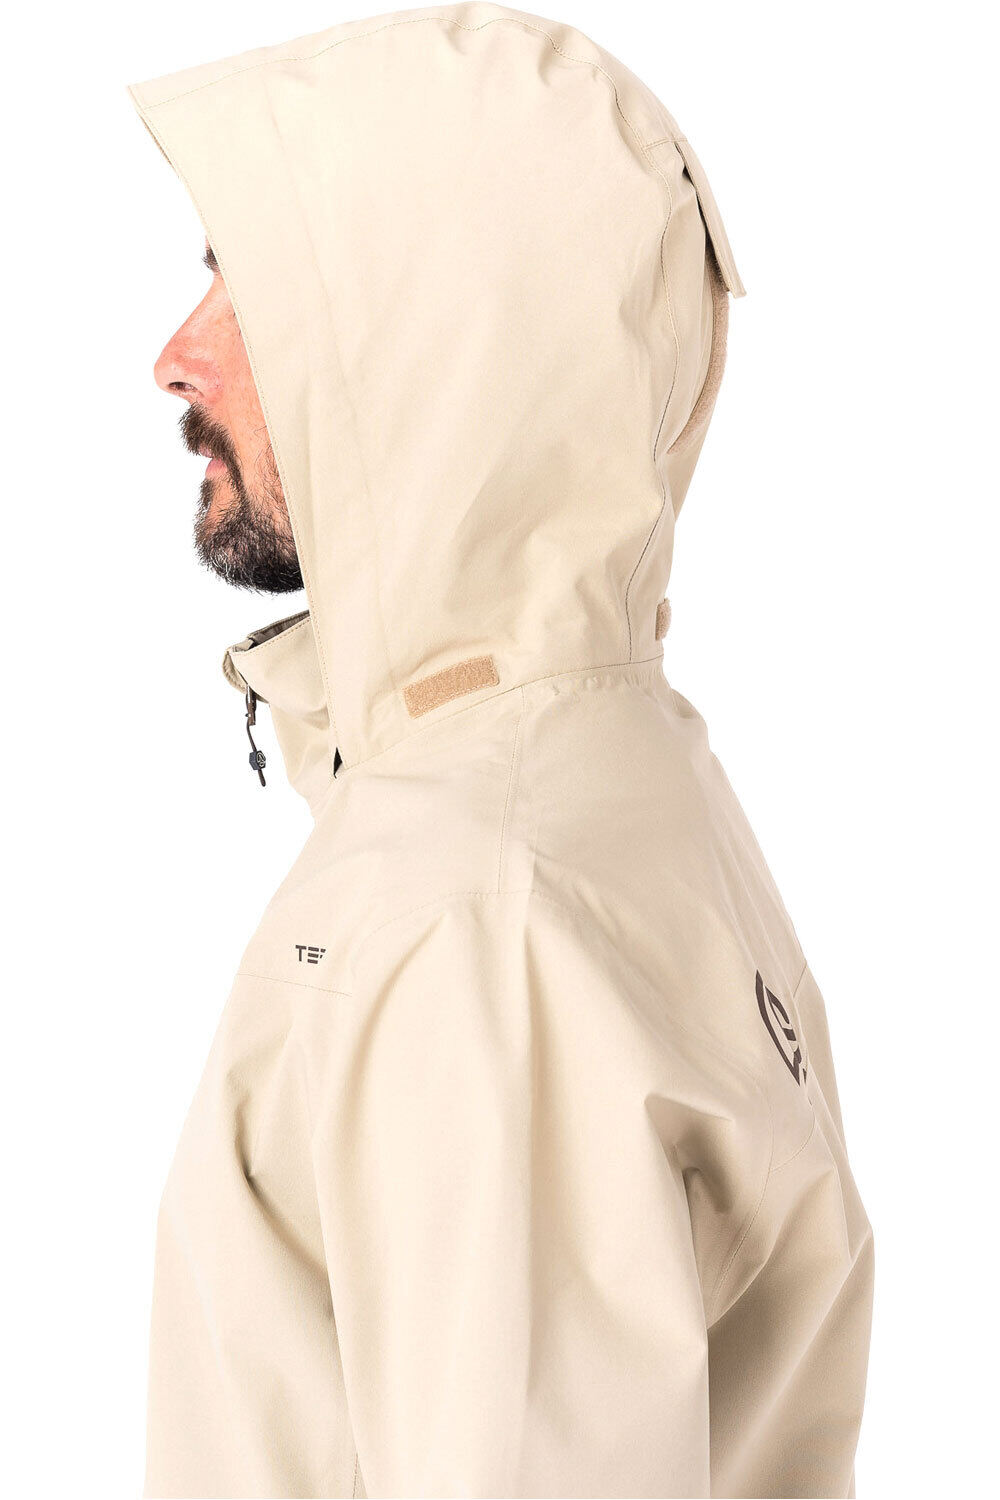 Ternua chaqueta impermeable hombre KULNUR JKT 06